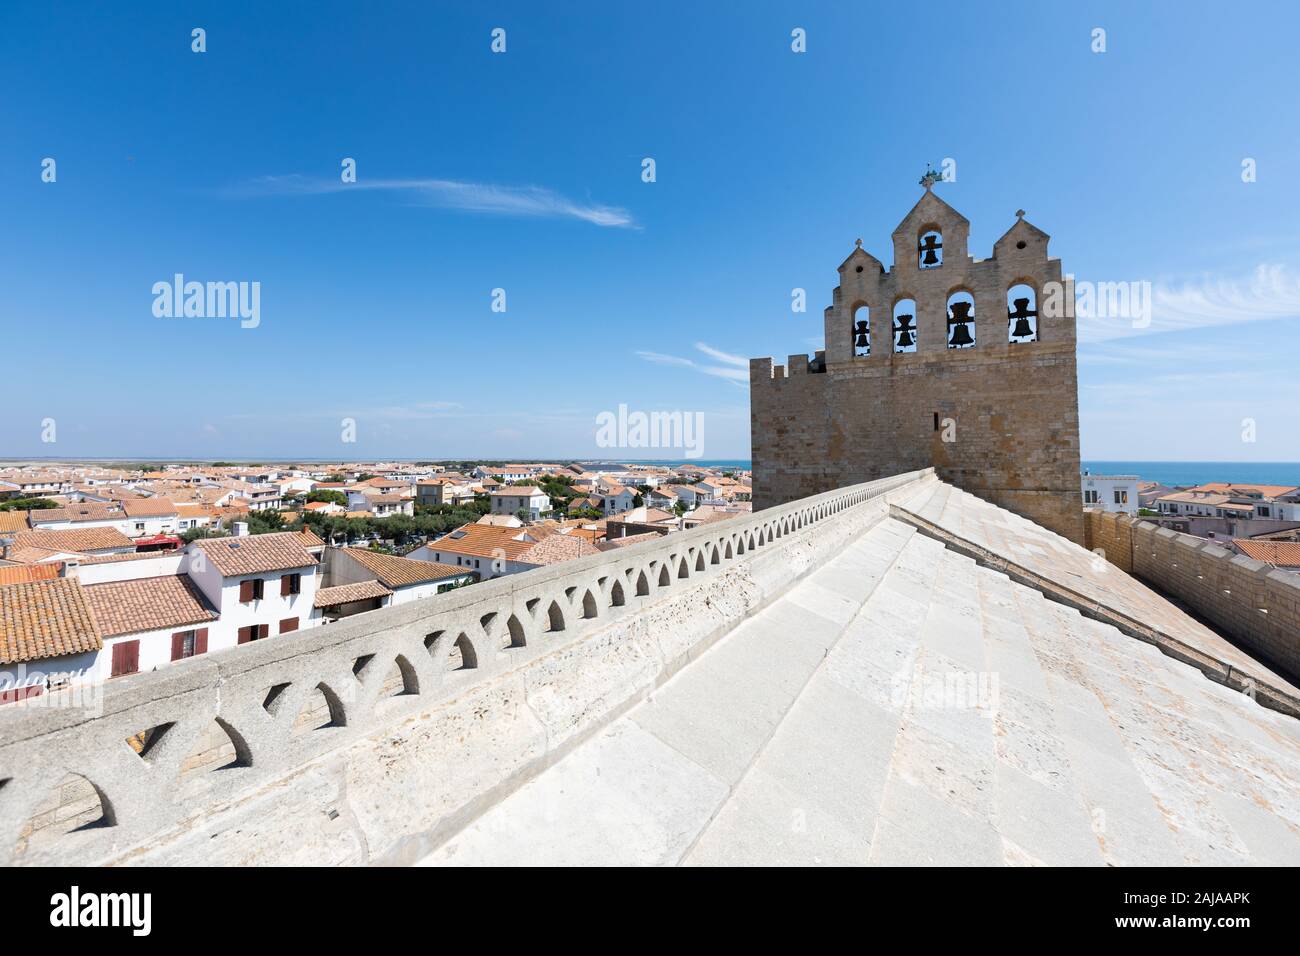 Saintes-Maries-de-la-Mer, Francia ciudad.Vista panorámica de la ciudad vieja desde la parte superior de la Iglesia de Saintes-Maries-de-la-Mer. Foto de stock